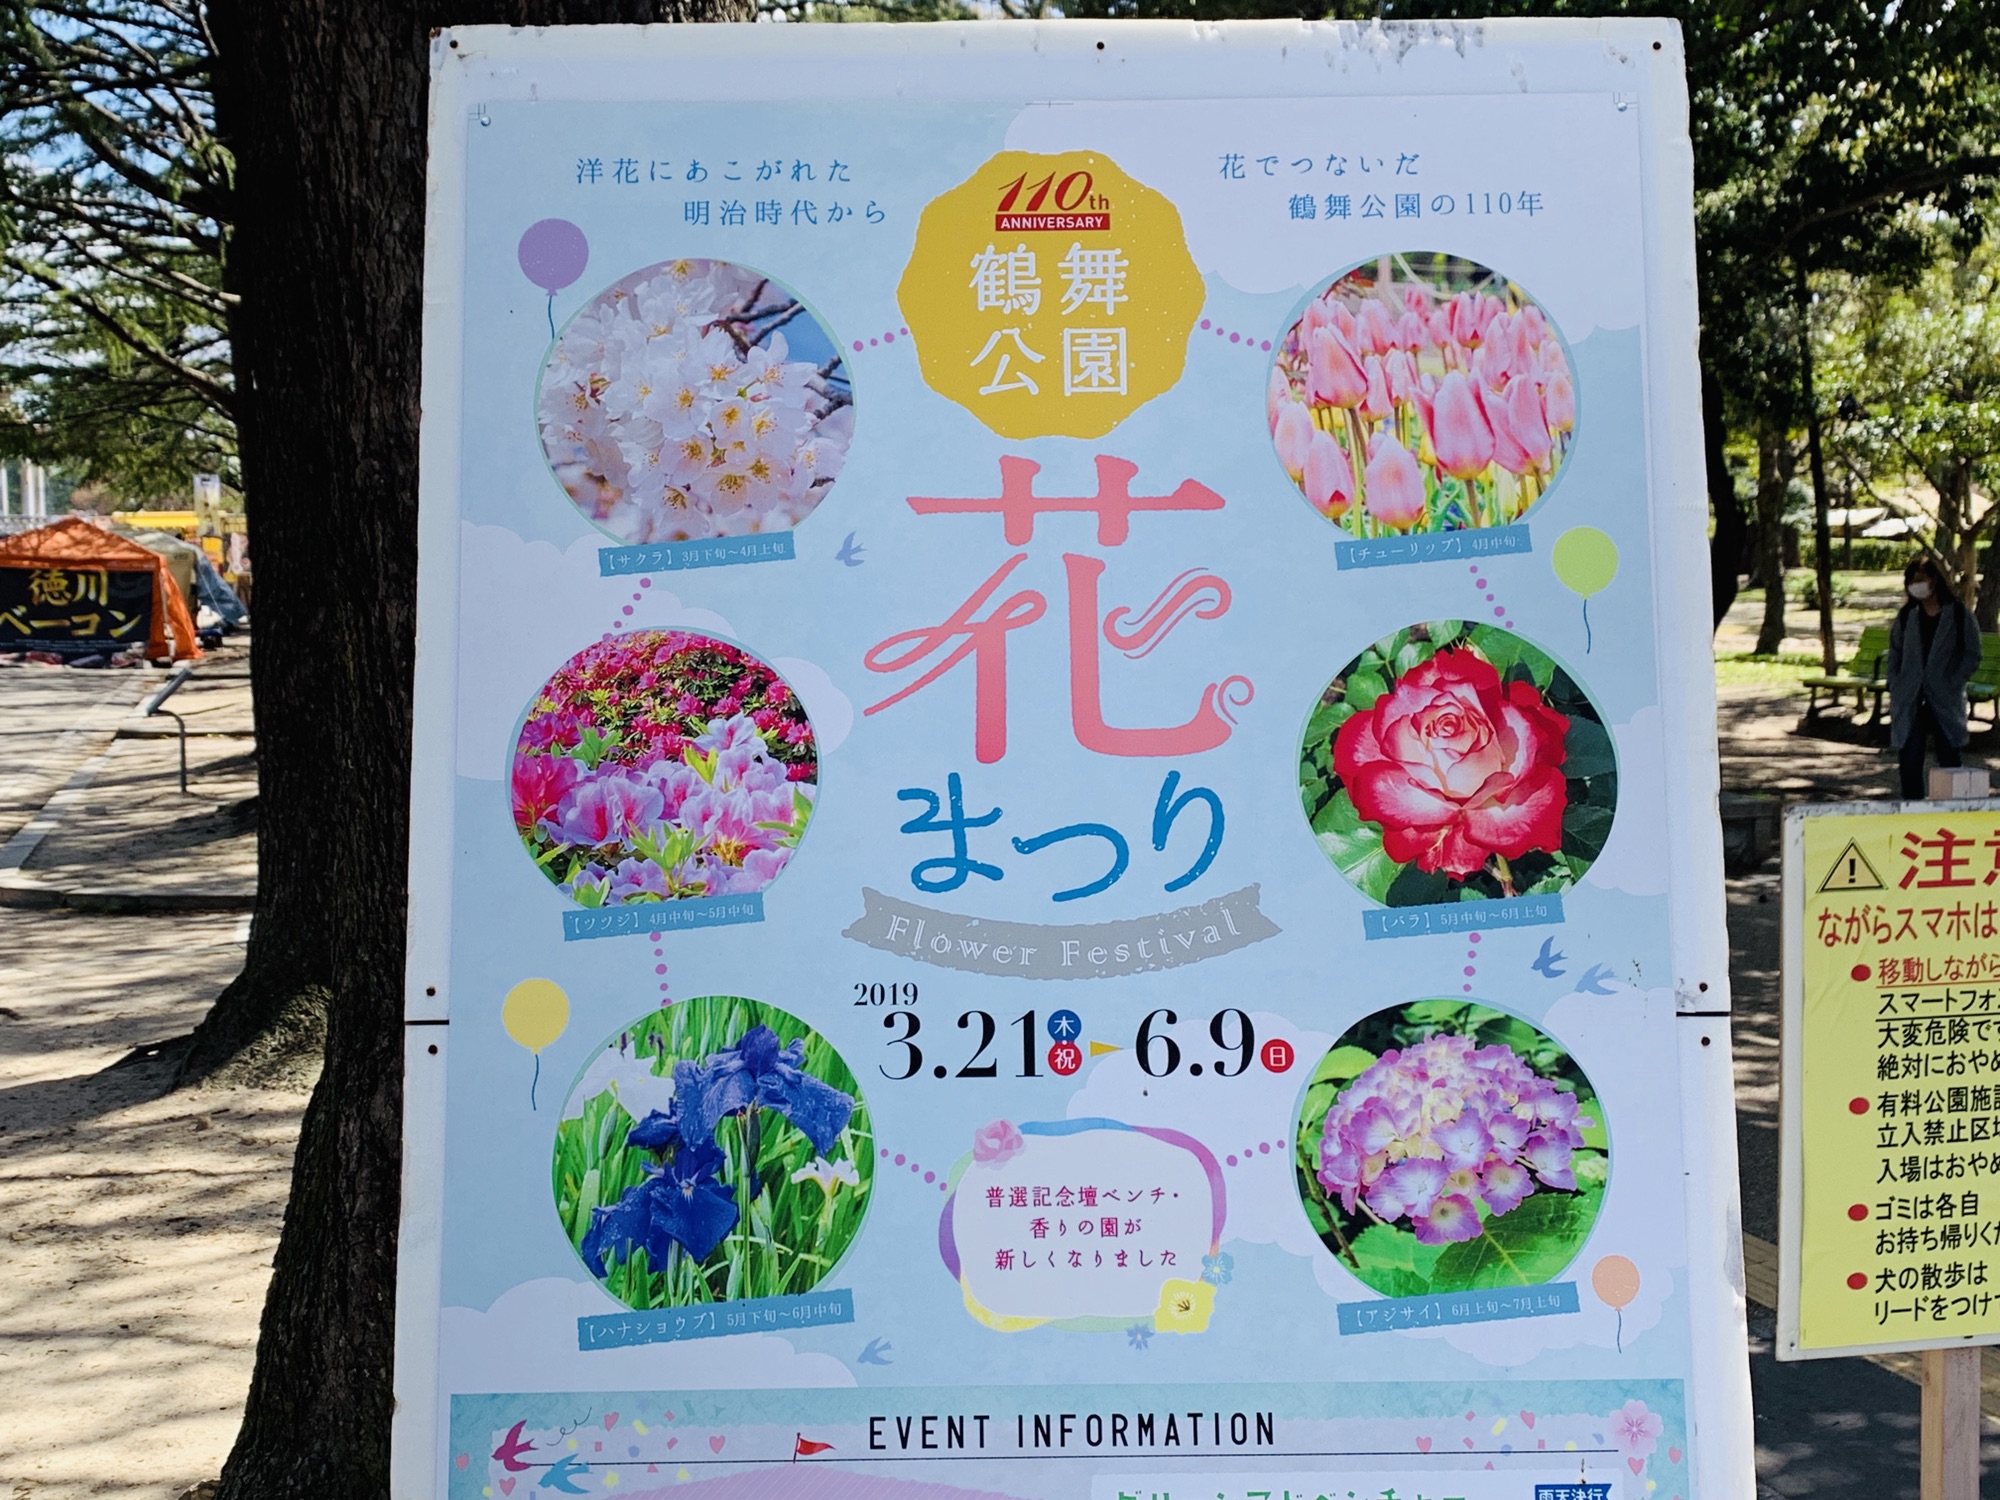 鶴舞公園 今年も 鶴舞公園花まつり が開催 名古屋発 街とりっぷマガジン Pon Po ポンポ